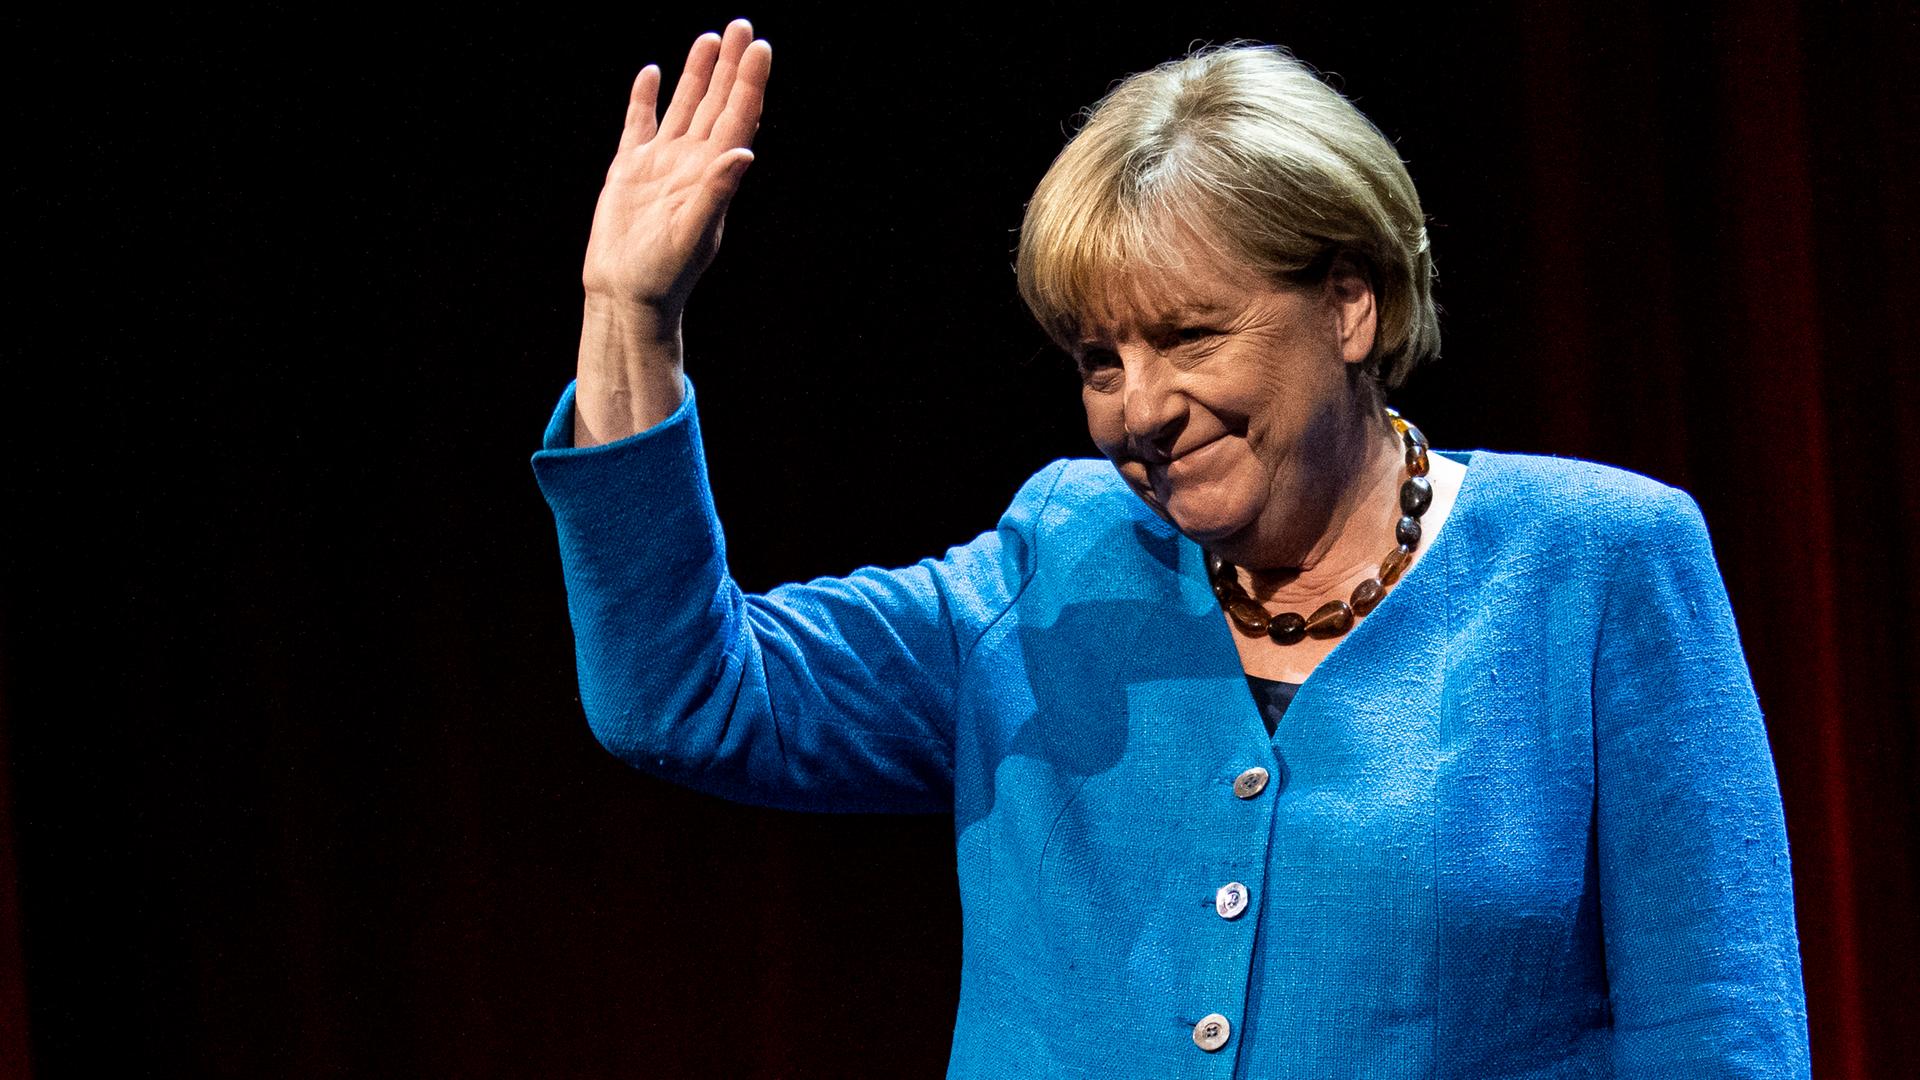 Elfenbeinküste - Altbundeskanzlerin Merkel erhält UNESCO-Friedenspreis für ihre Flüchtlingspolitik im Jahr 2015